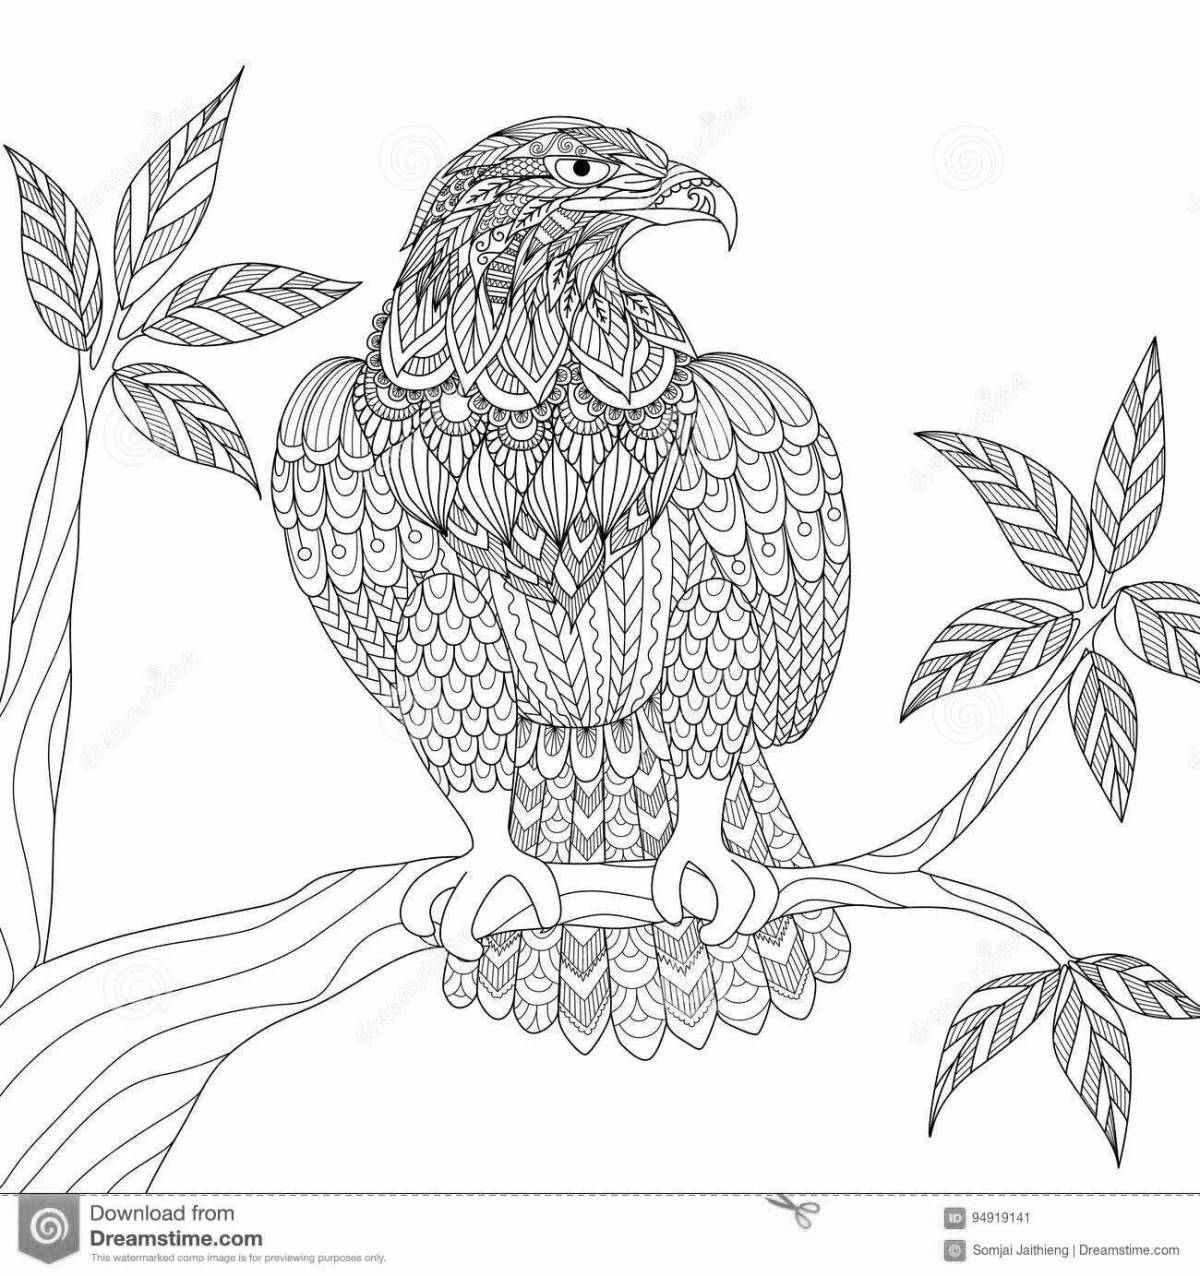 Великолепная раскраска антистрессовый орел